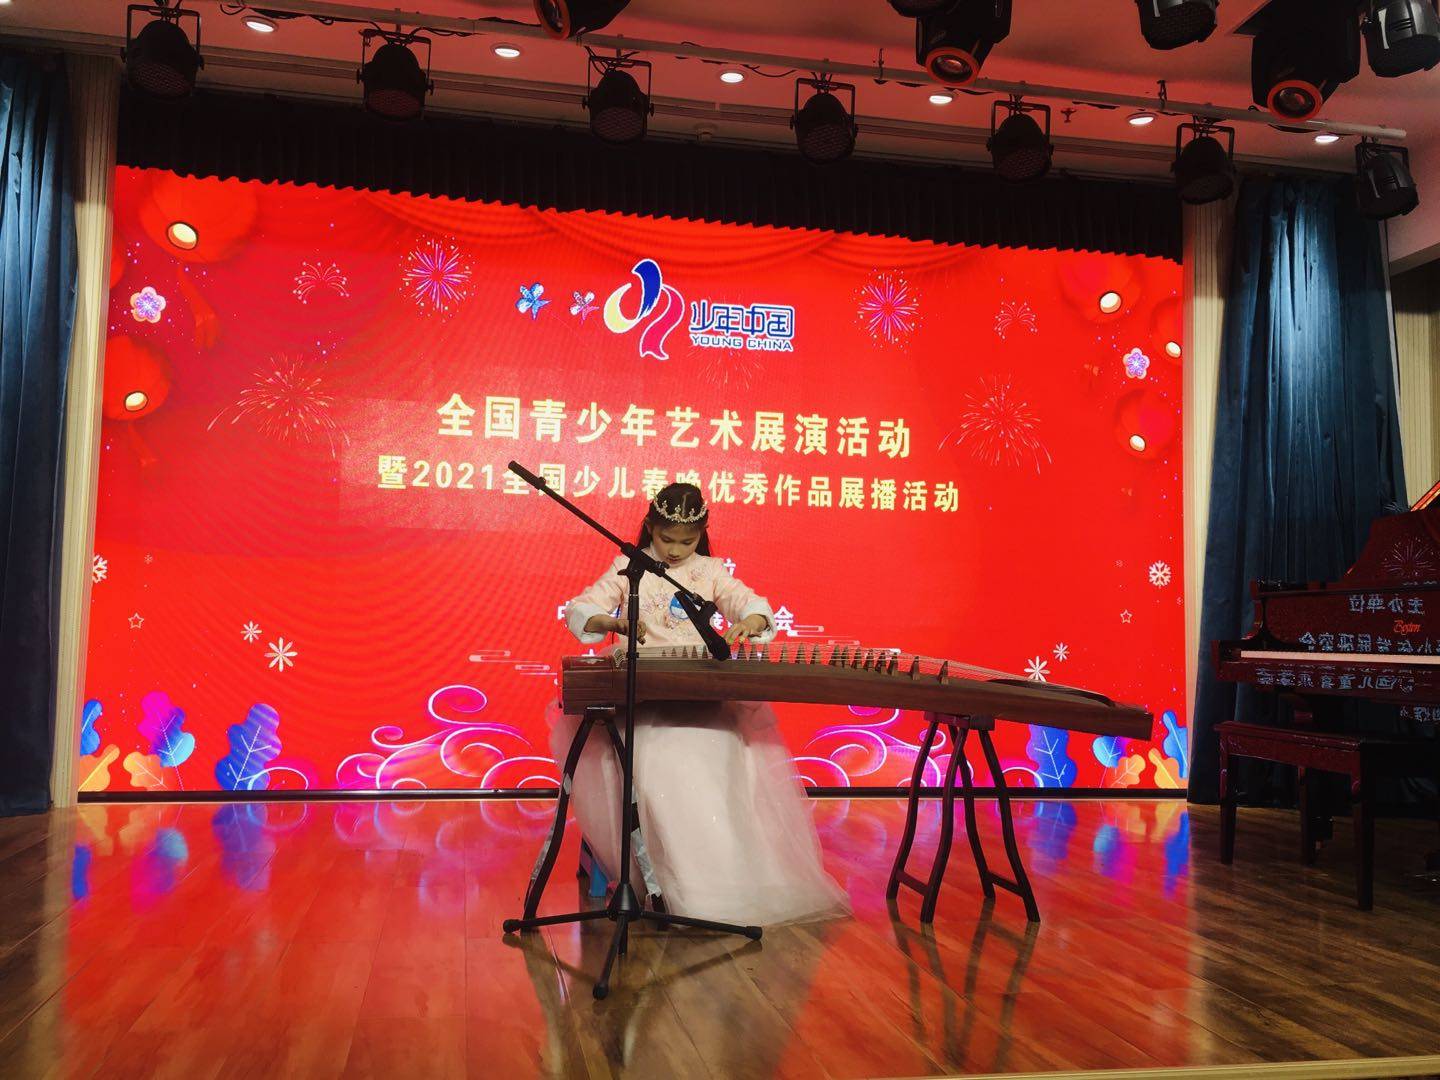 少年中国-山东济南艺术展演活动在线直播-上山传媒-上山传媒